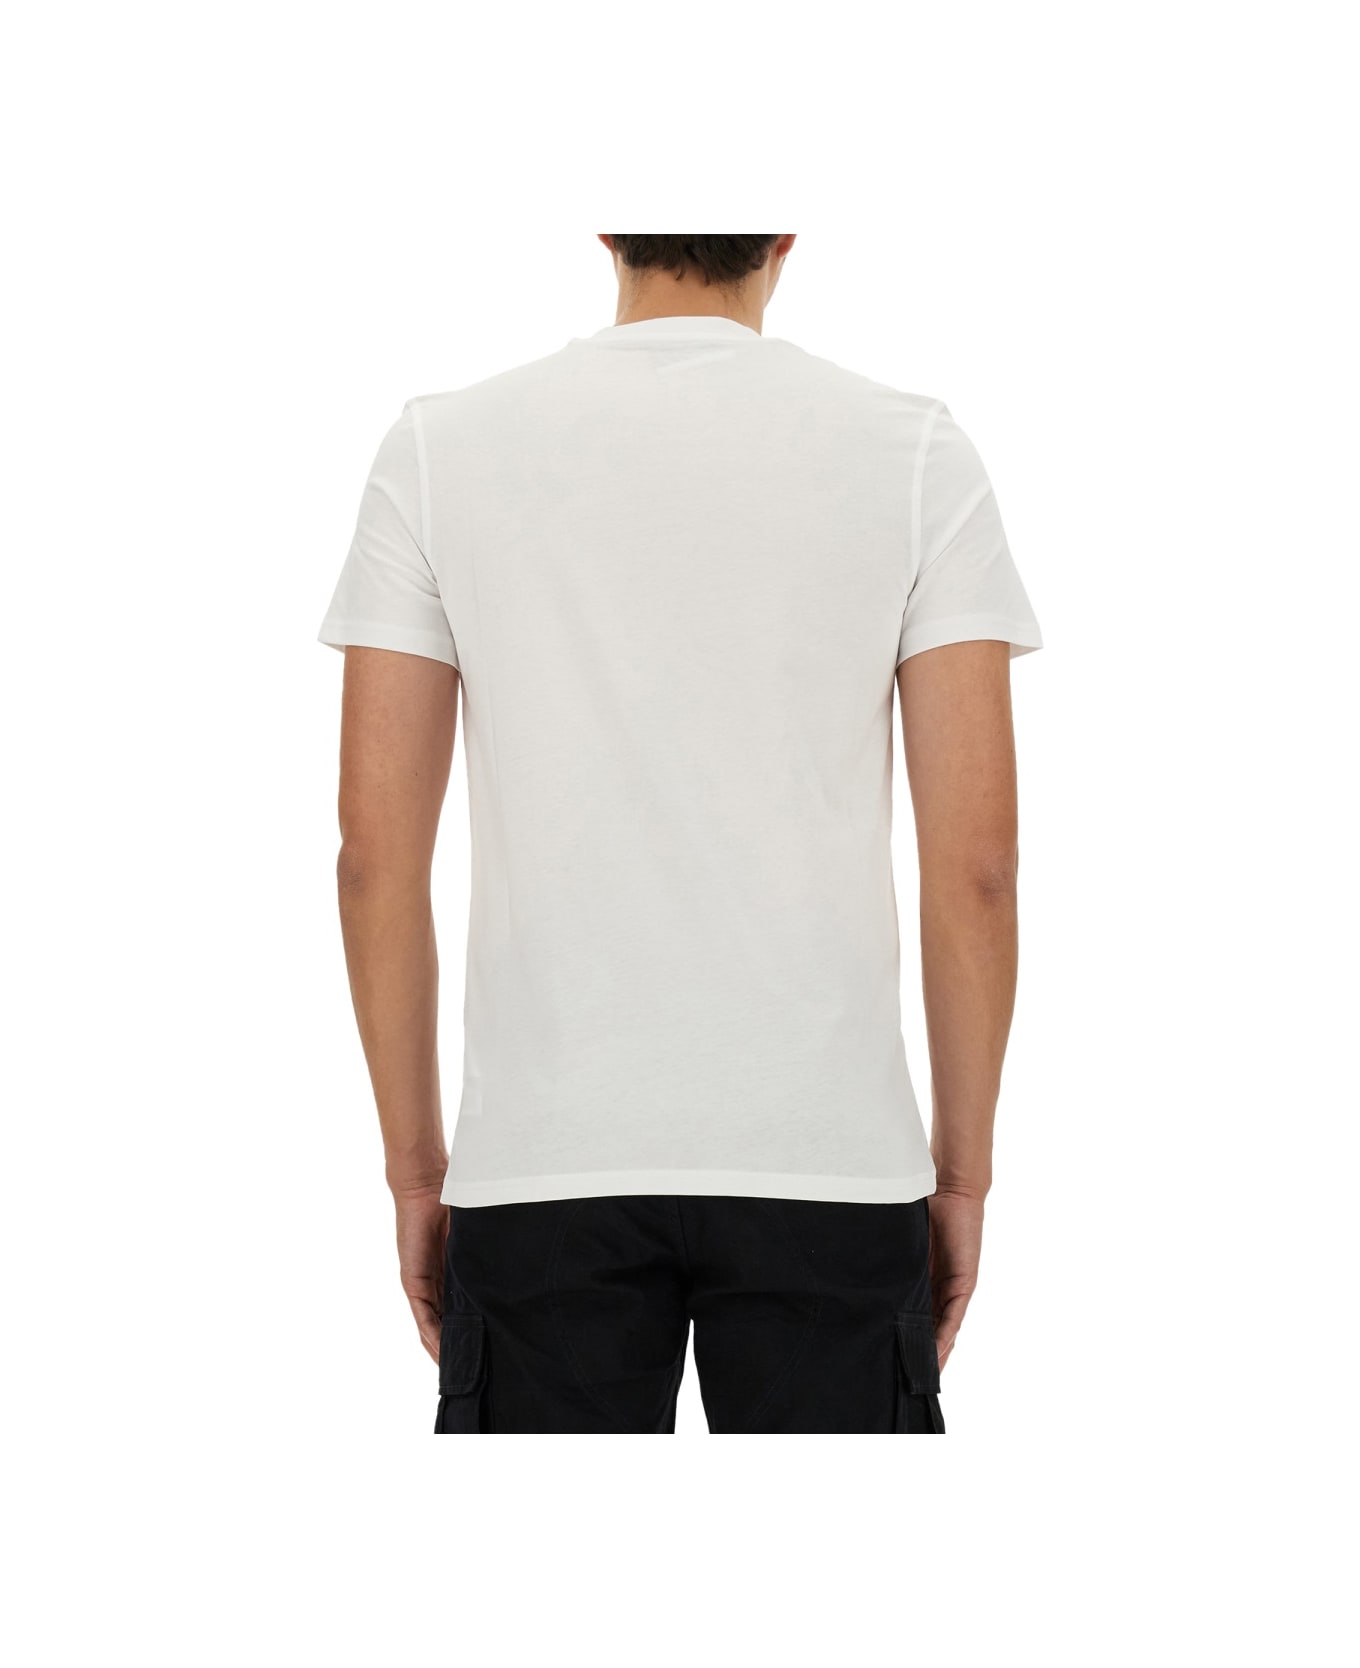 Moschino "teddy Mesh" T-shirt - WHITE